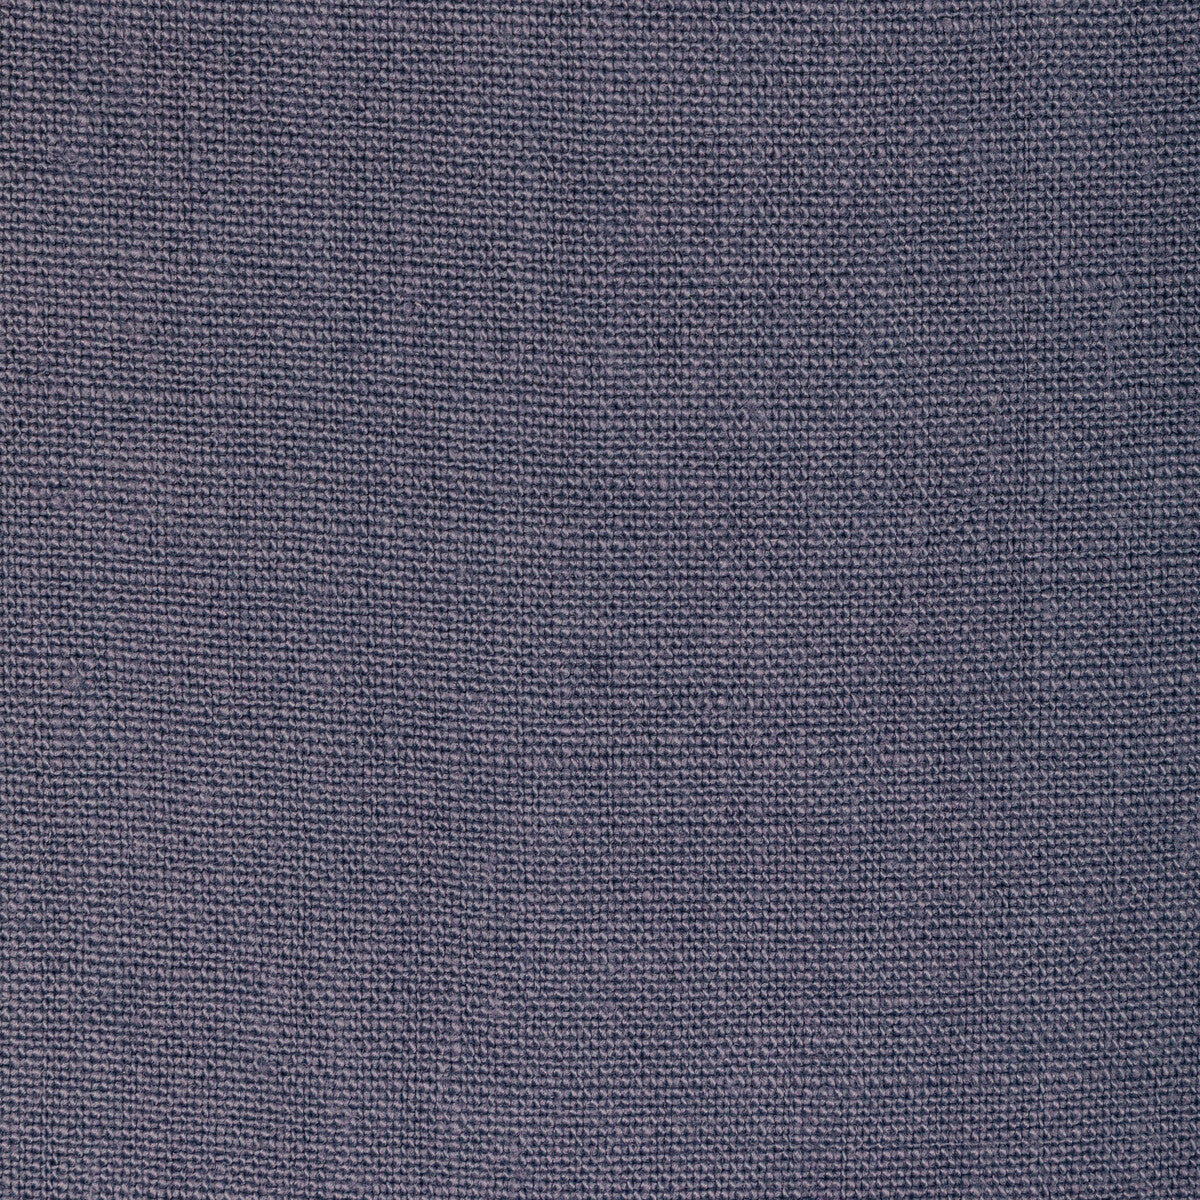 Kravet Basics fabric in 36332-521 color - pattern 36332.521.0 - by Kravet Basics